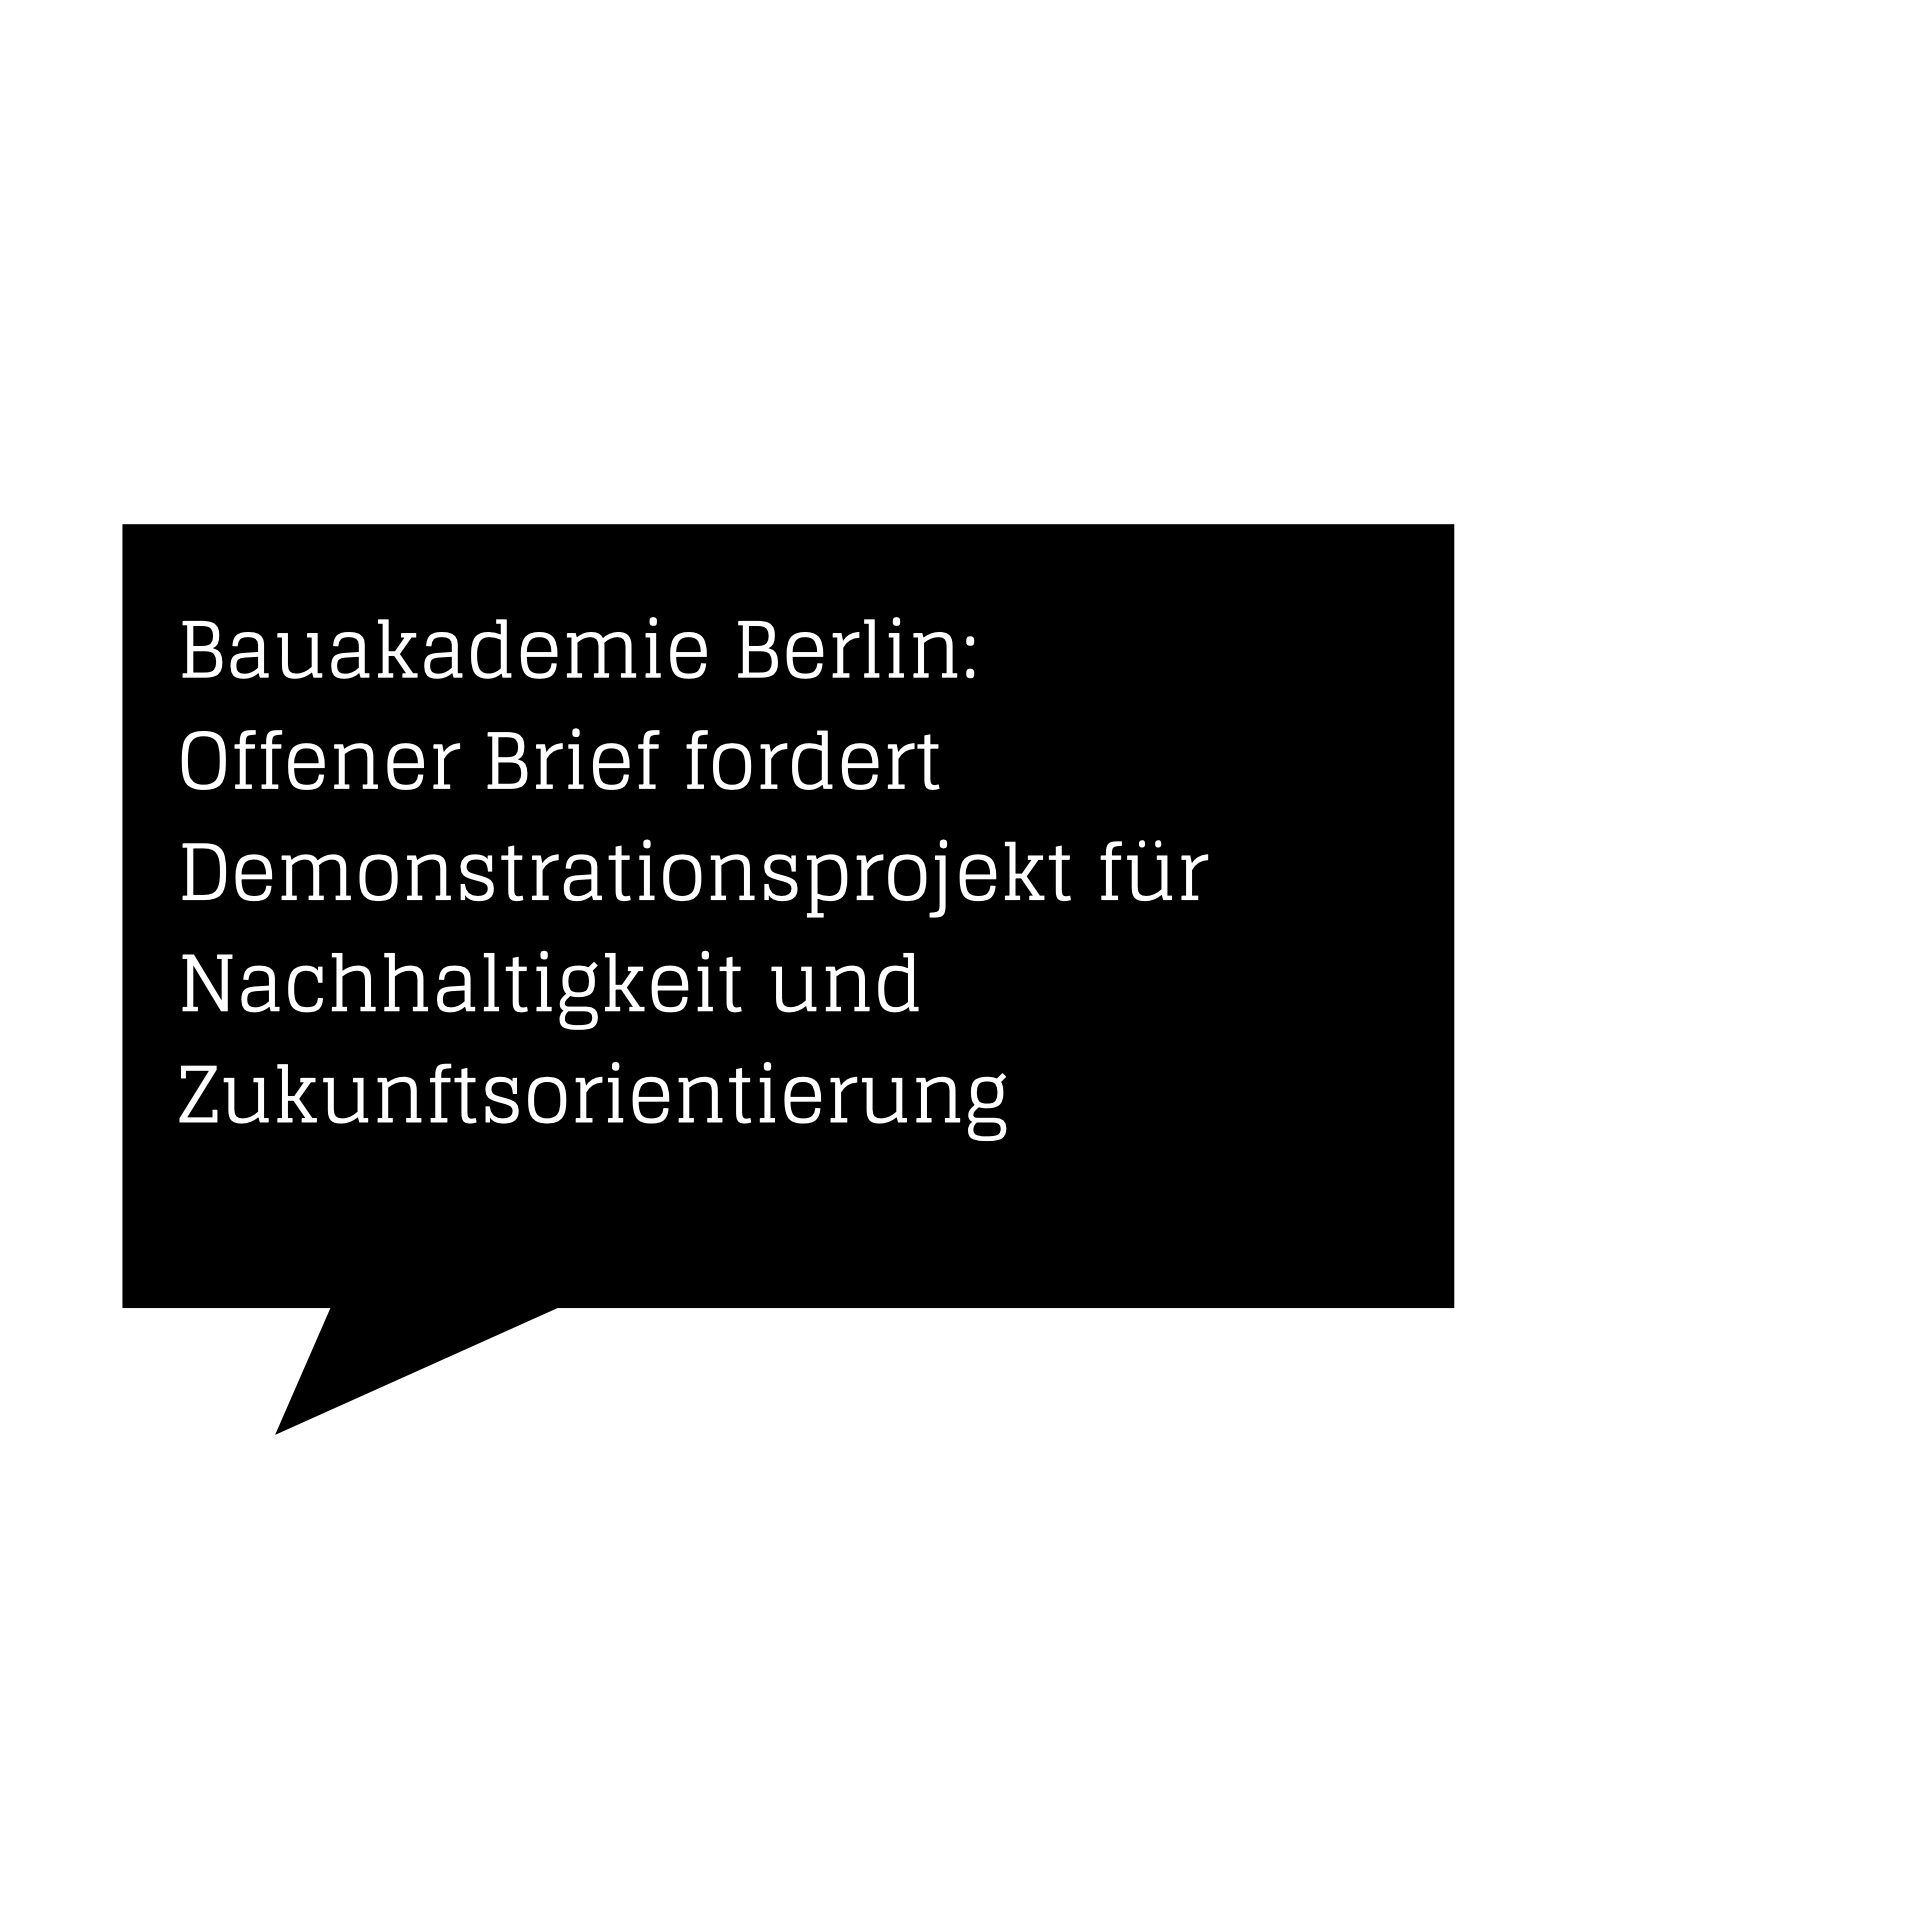 Bauakademie Berlin: Offener Brief fordert Demonstrationsprojekt für Nachhaltigkeit und Zukunftsorientierung